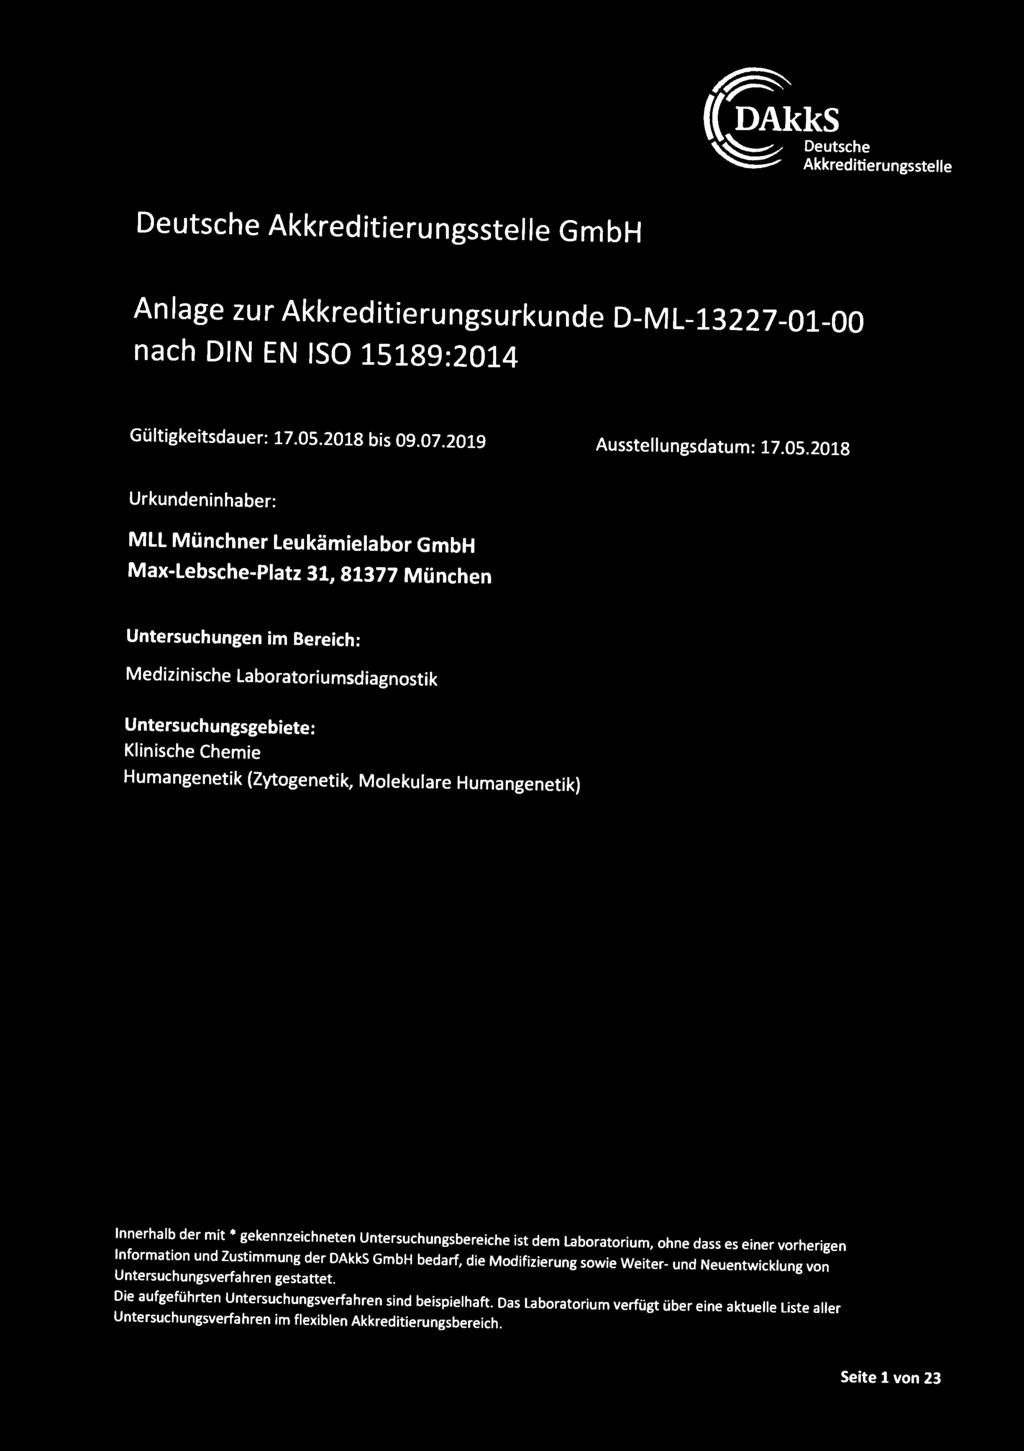 2018 Urkundeninhaber: MLL Münchner Leukämielabor GmbH Max-Lebsche-Piatz 31, 81377 München Untersuchungen im Bereich: Medizinische Laboratoriumsdiagnostik Untersuchungsgebiete: Klinische Chemie